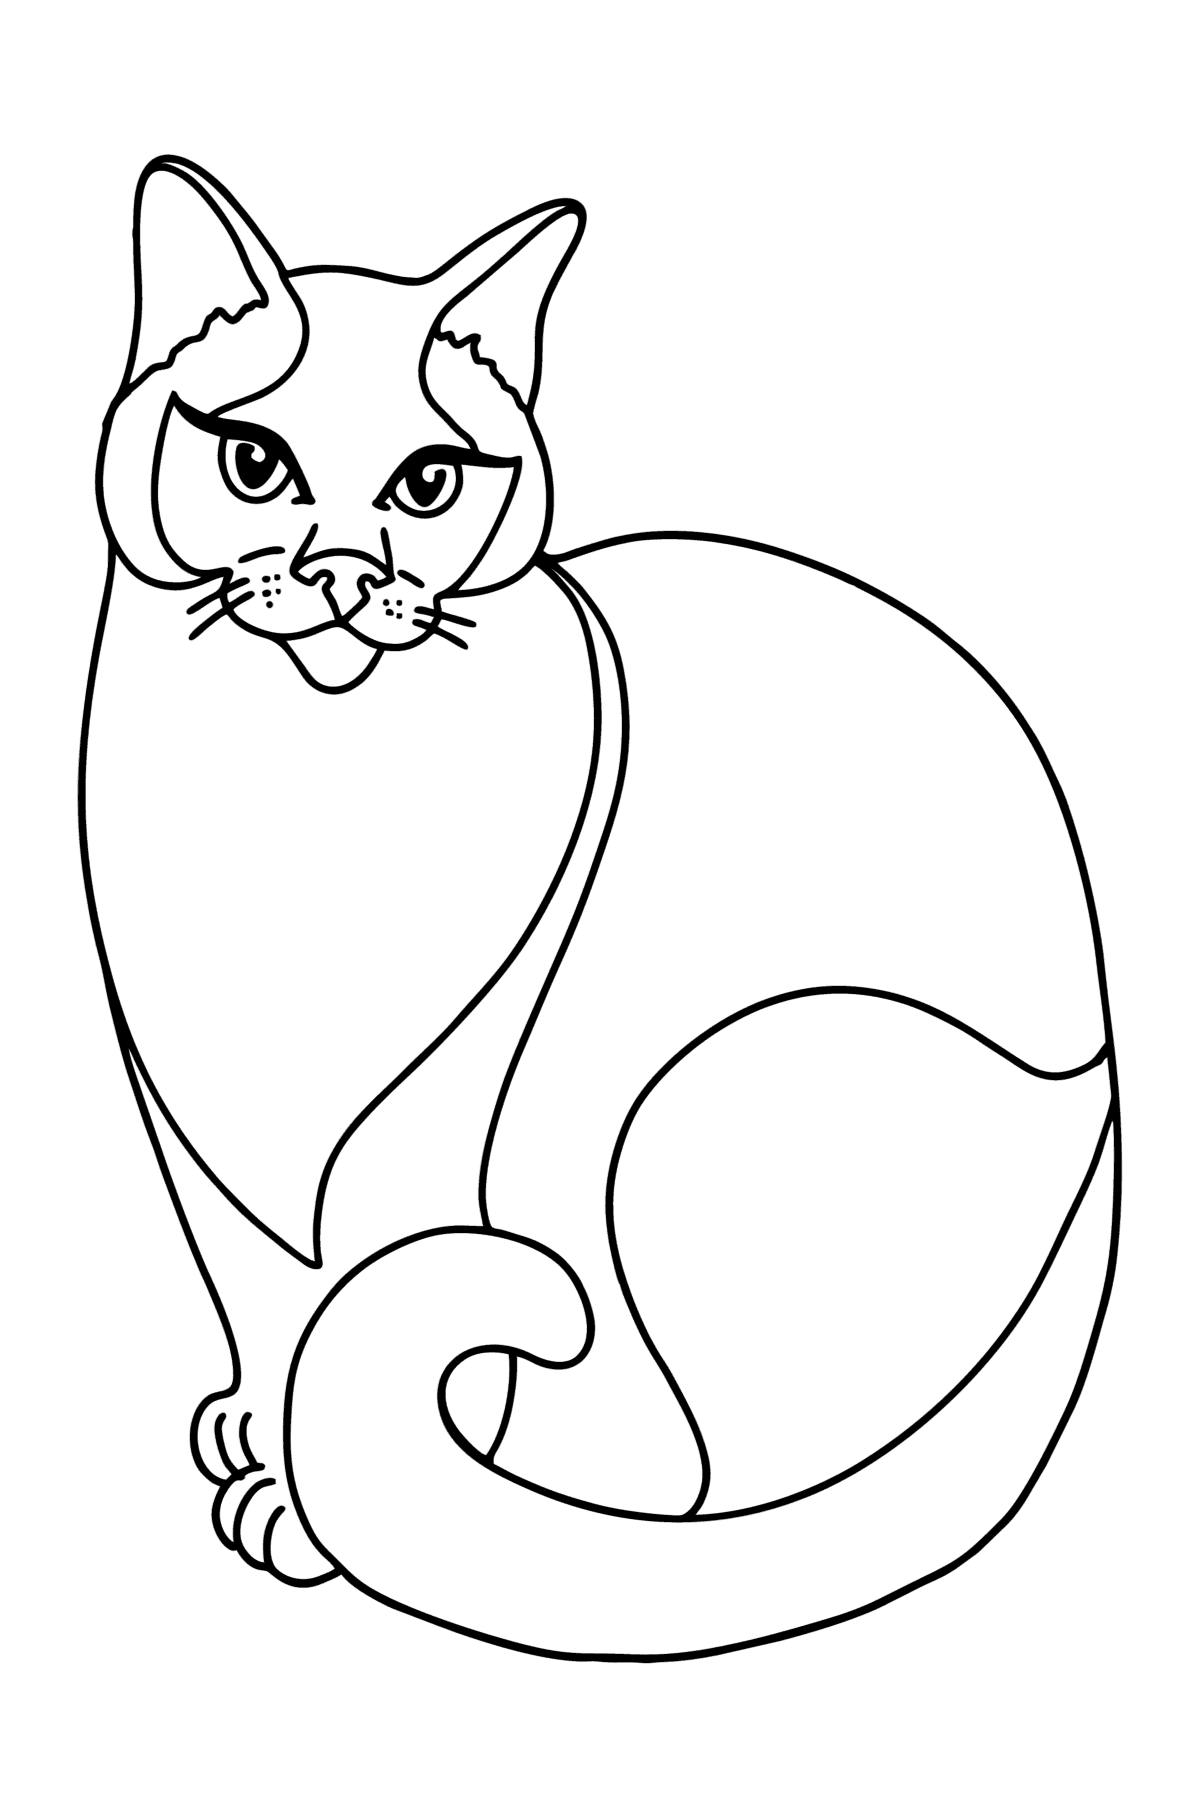 Dibujo de gato siamés para colorear - Dibujos para Colorear para Niños